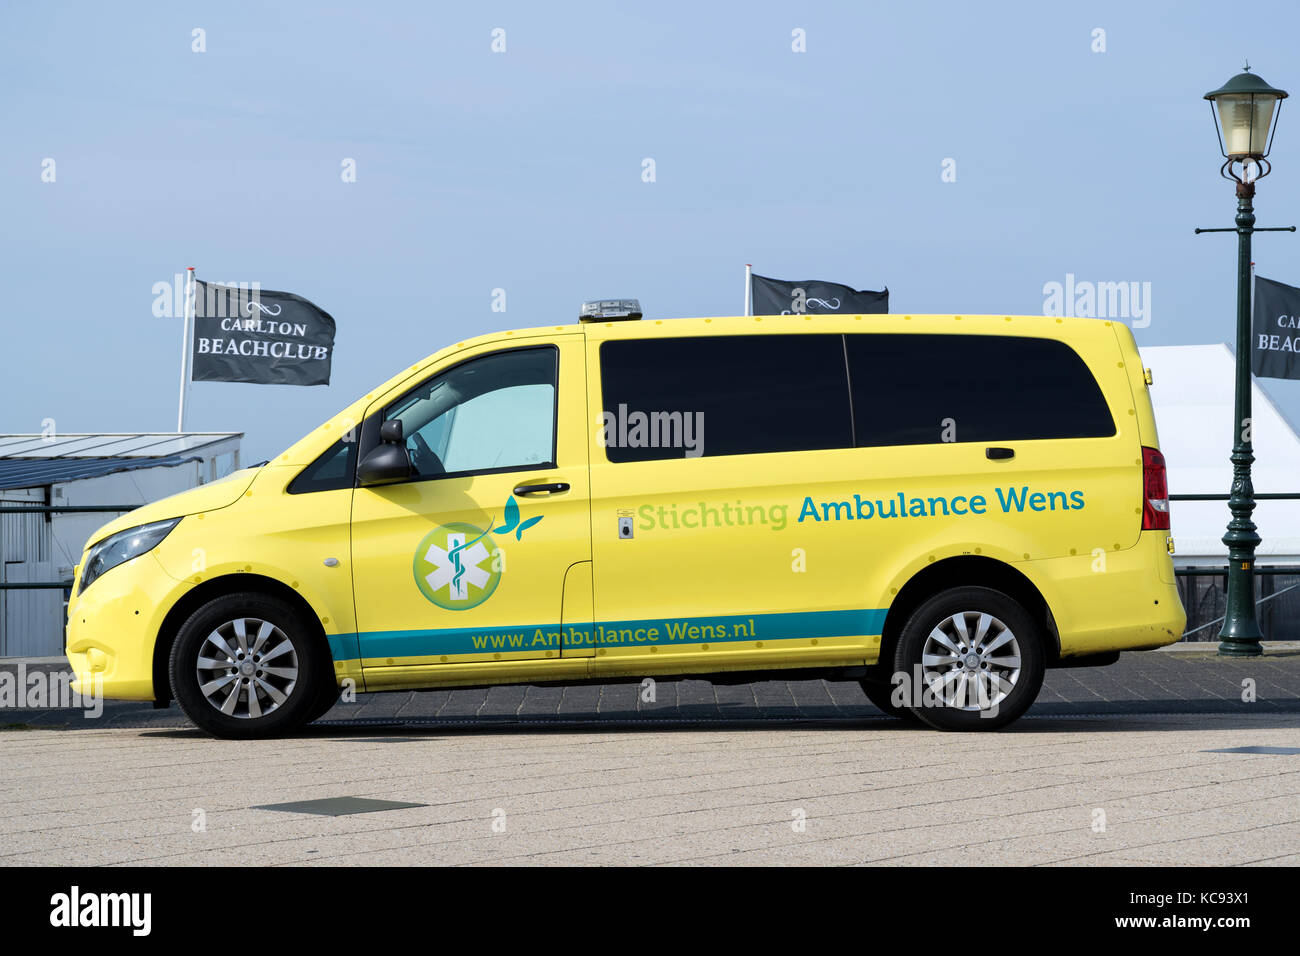 ambulance van of Stichting Ambulance Wens (Last Wish Foundation) at the boulevard in Scheveningen, Netherlands Stock Photo